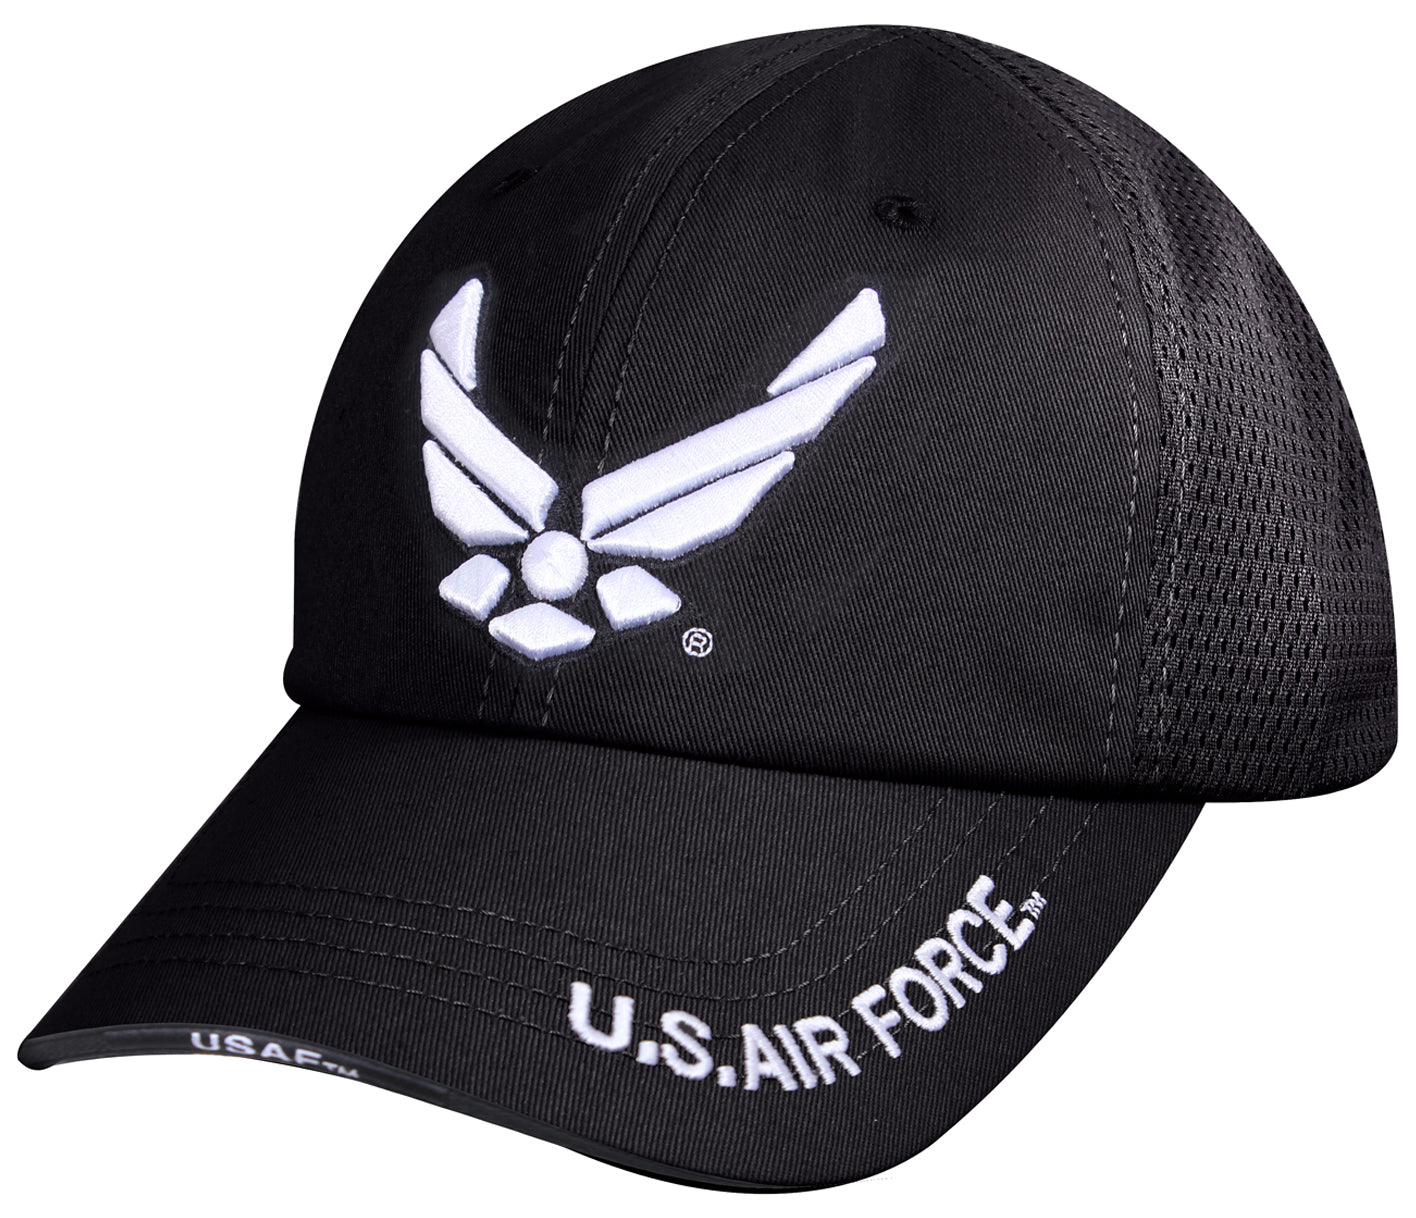 U.S. Air Force Baseball Cap